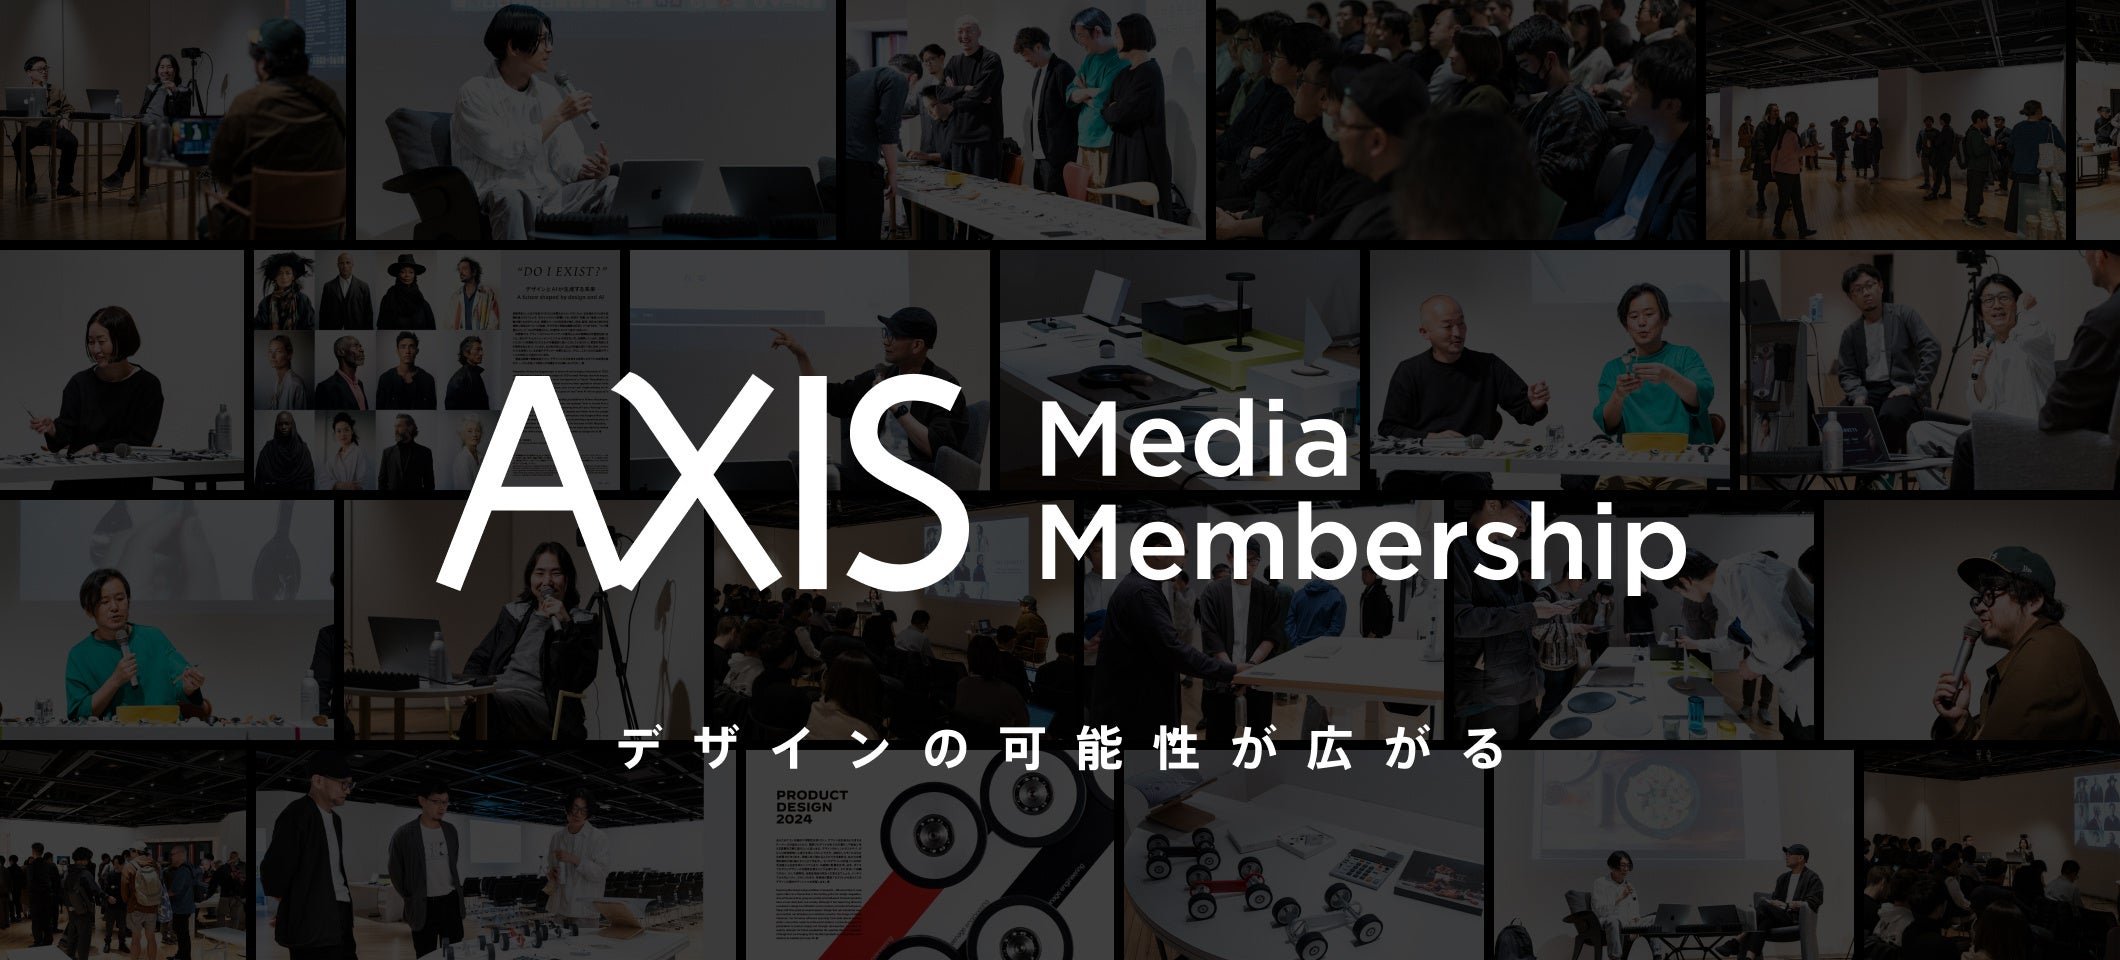 六本木を拠点に活動するデザイン提案体「AXIS」が新たなメディアサービスを開始